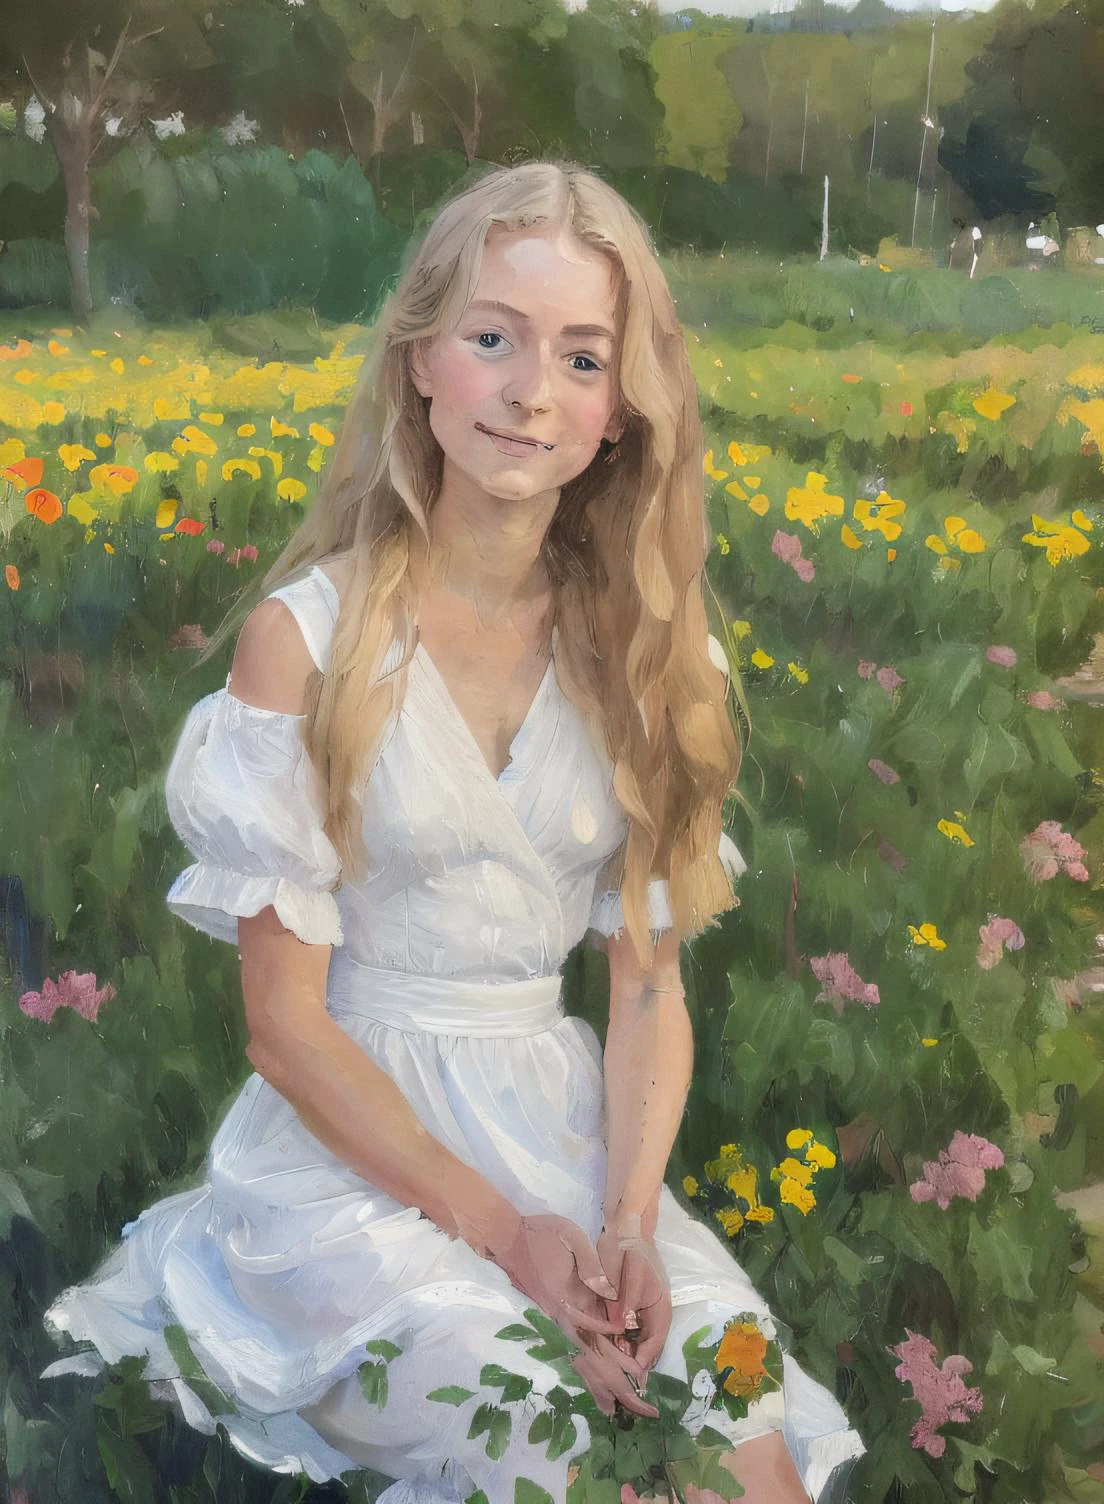 (MSEの絵画) (ブラシストローク) (傑作, 最高品質), 緑の植物と花の畑に座っている、長いブロンドの髪をした18歳の少女の顔のクローズアップ, 彼女は顎の下に手を置いた, 温かみのある照明, 白いドレス, 詳細な顔の特徴, 繊細